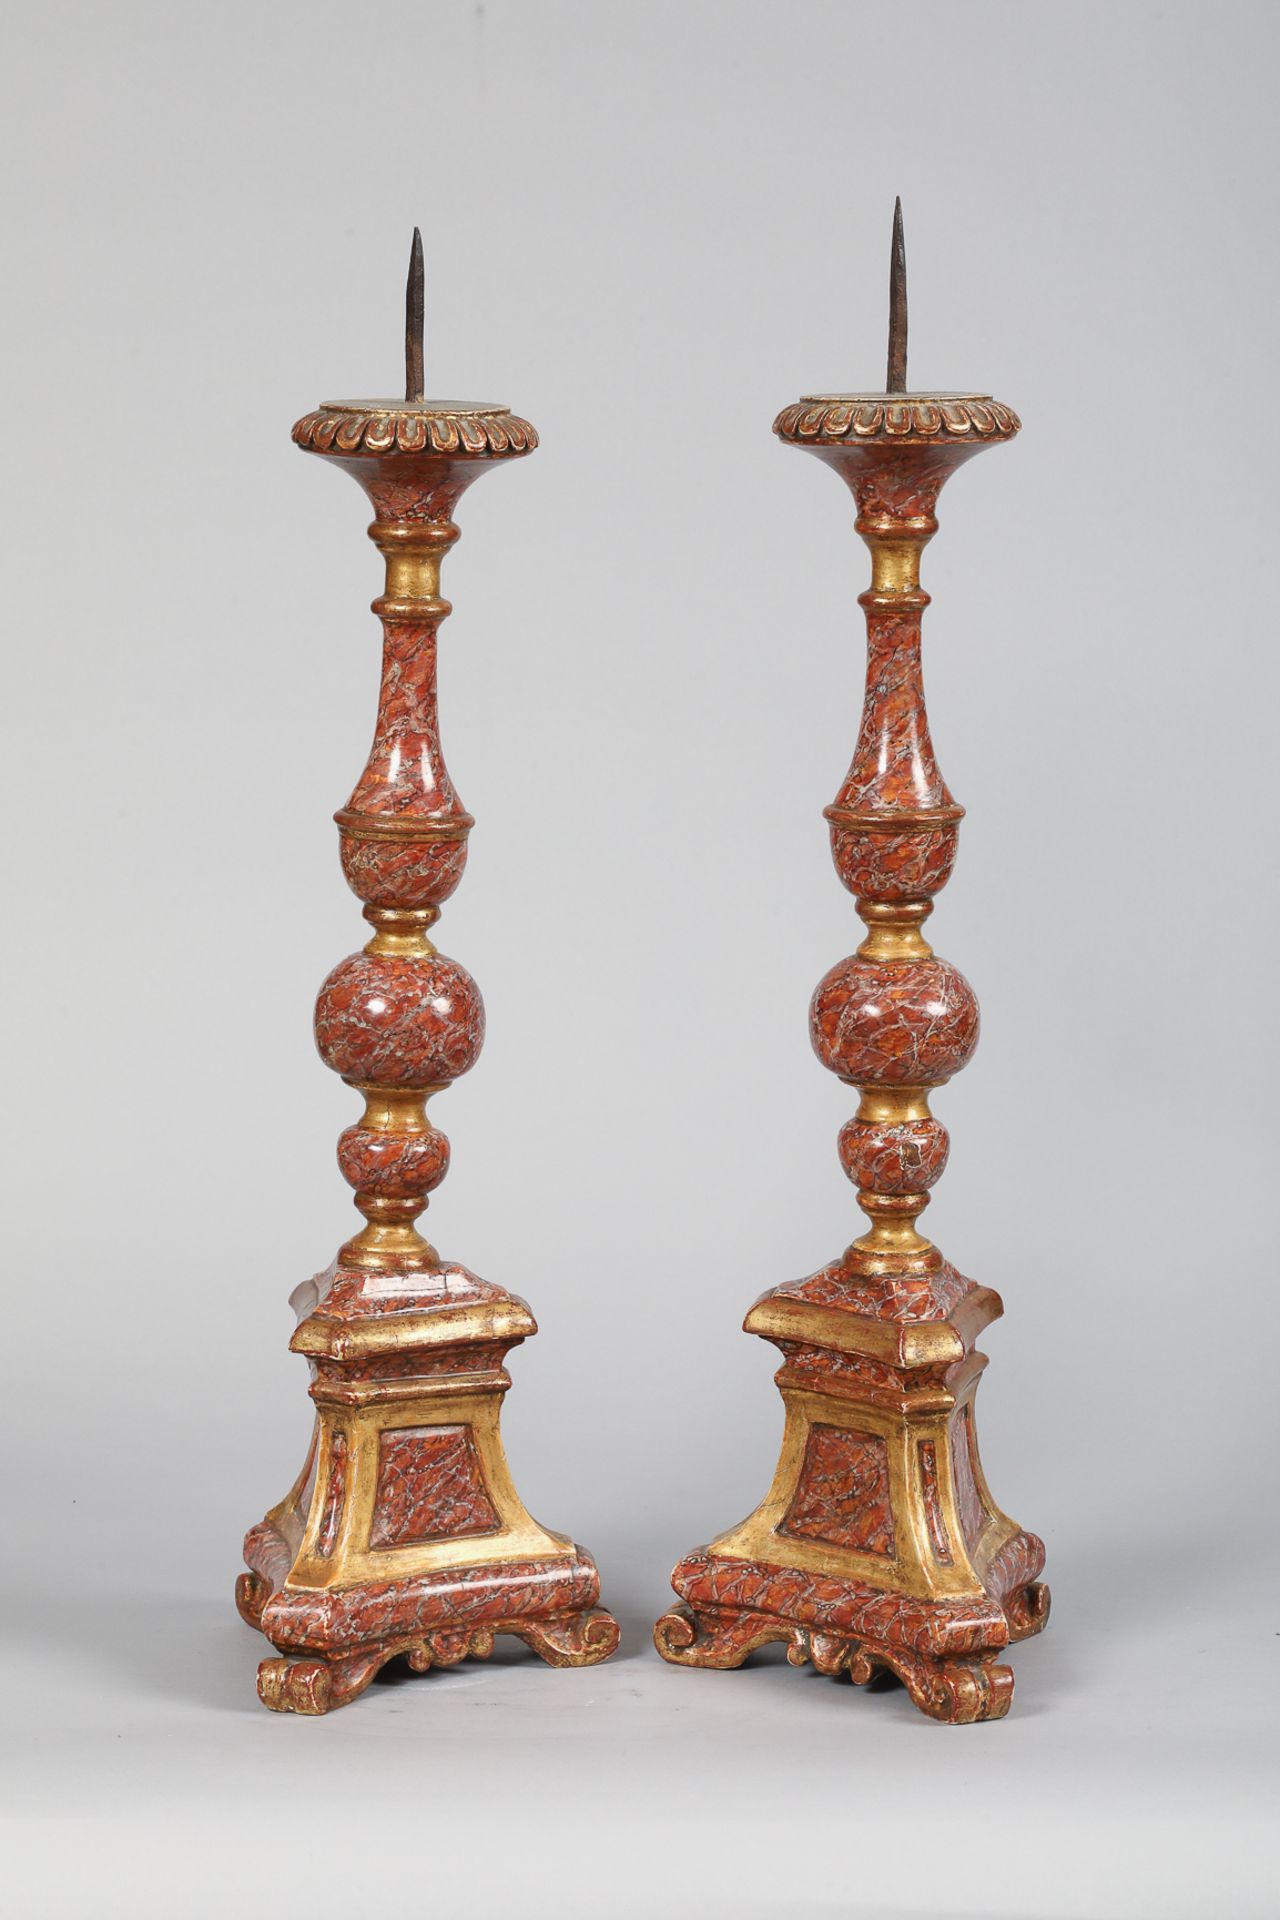 Paire de chandeliers en bois laqué “trompe œil” France 18 eme siècle 65 et 77cm